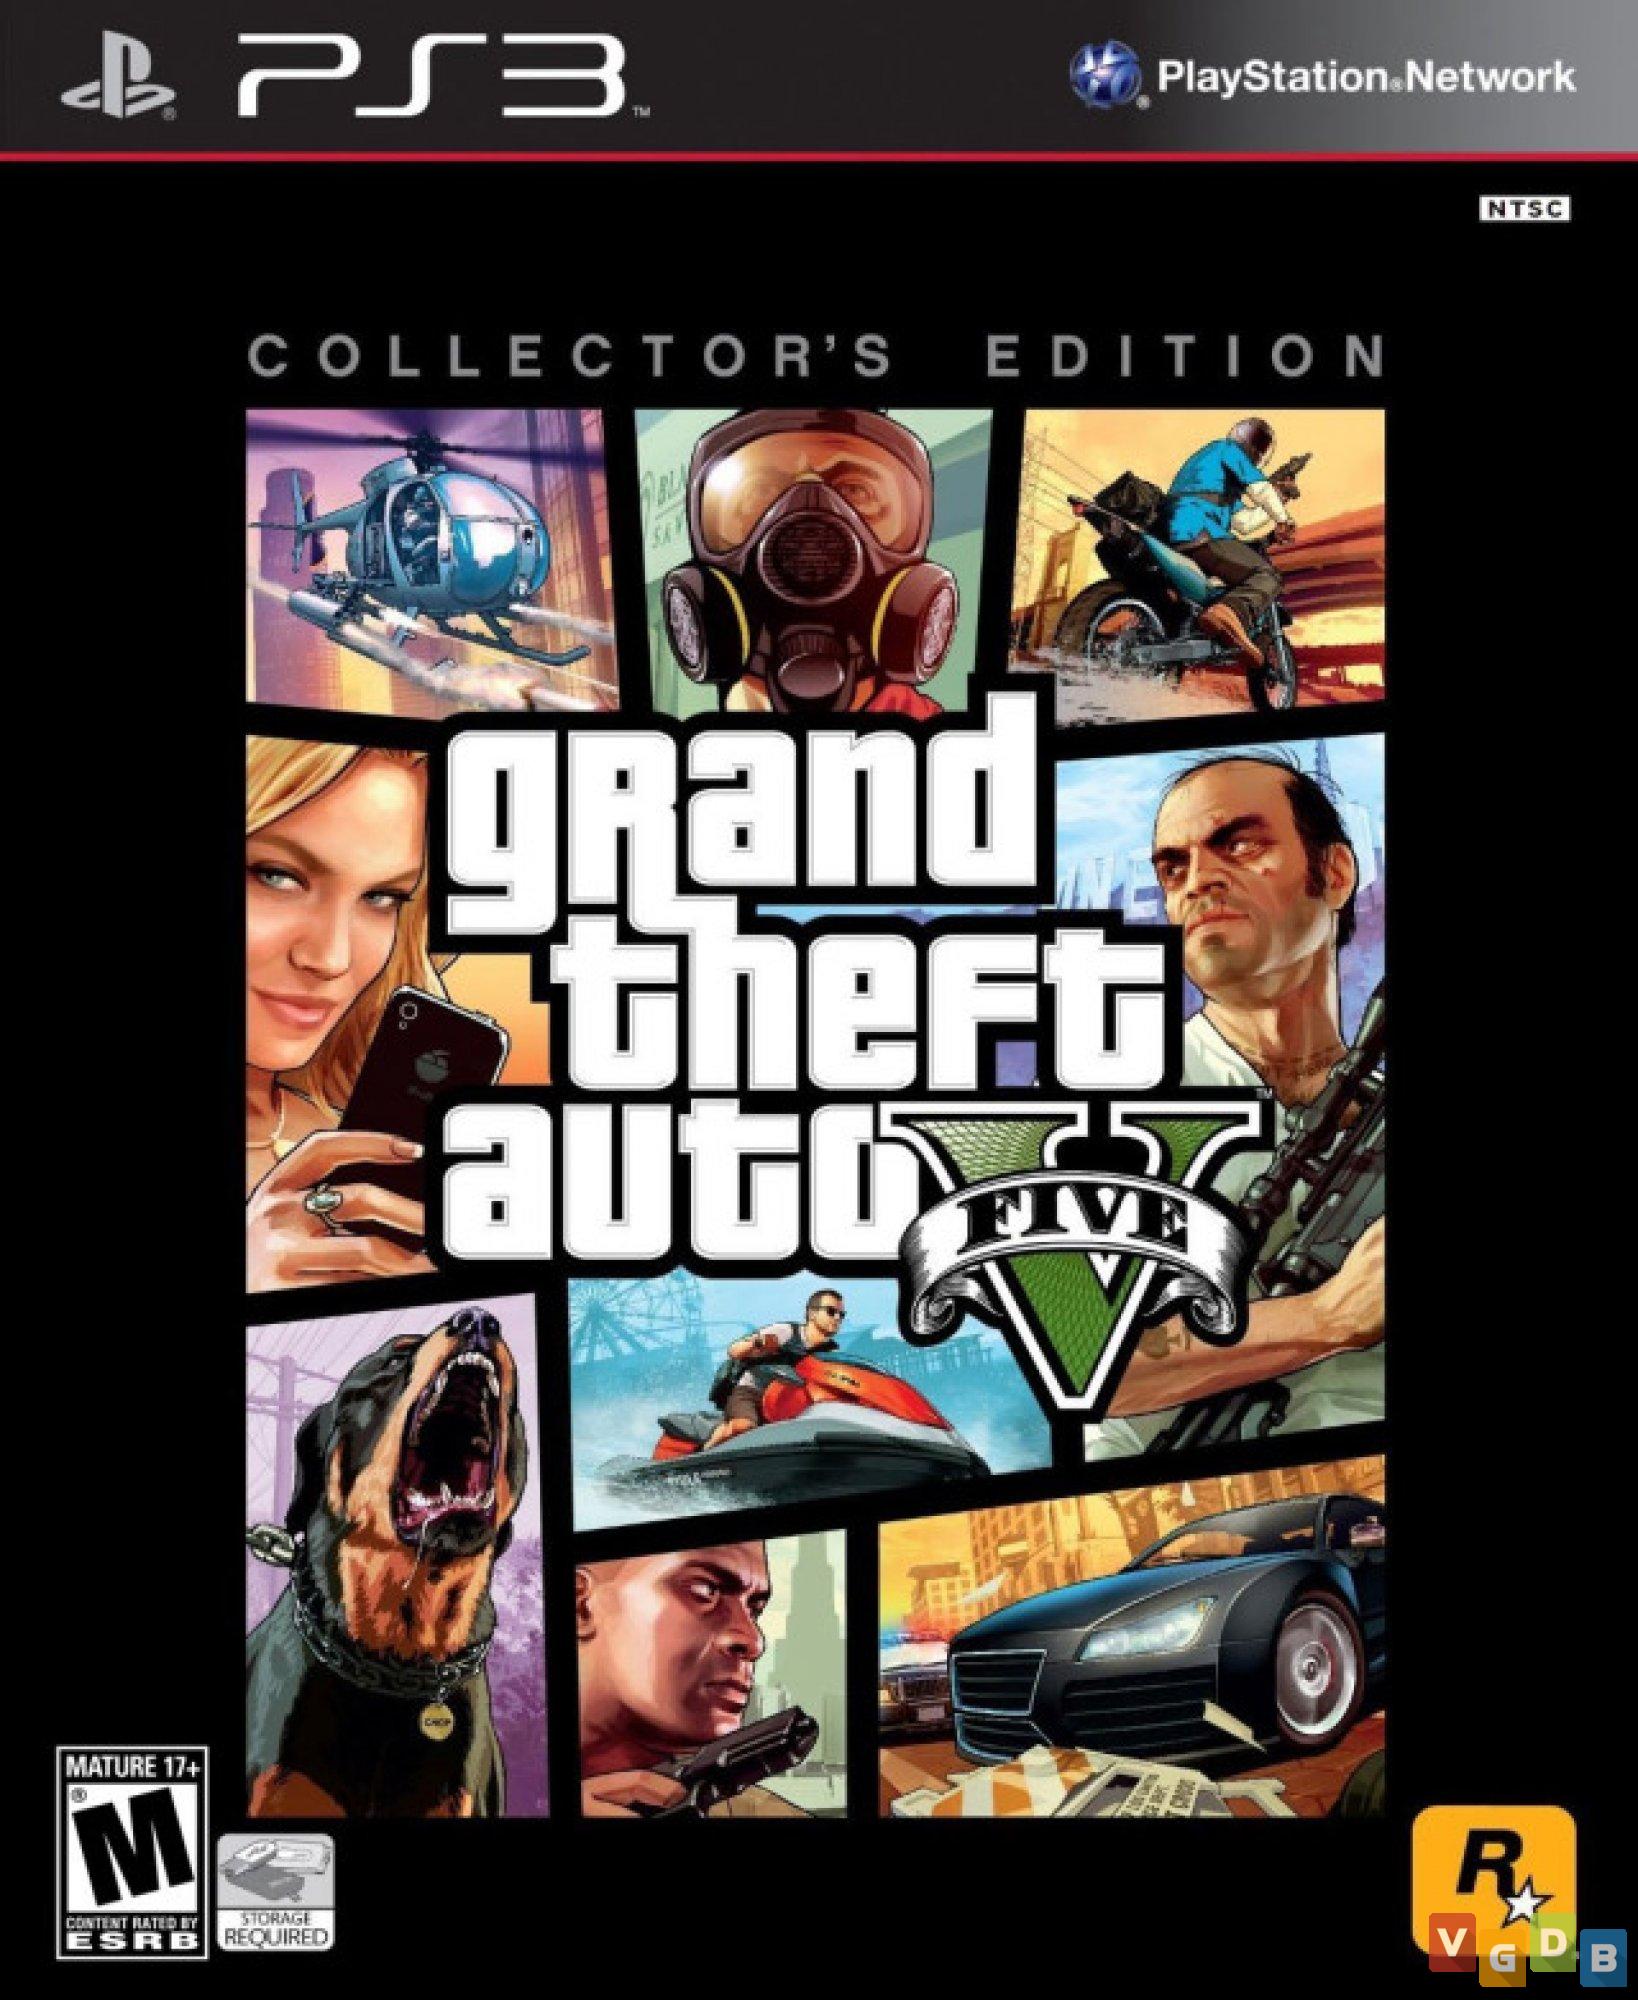 Rockstar Games Collection Edition PS3 4 JOGOS Pronta Entrega - DU